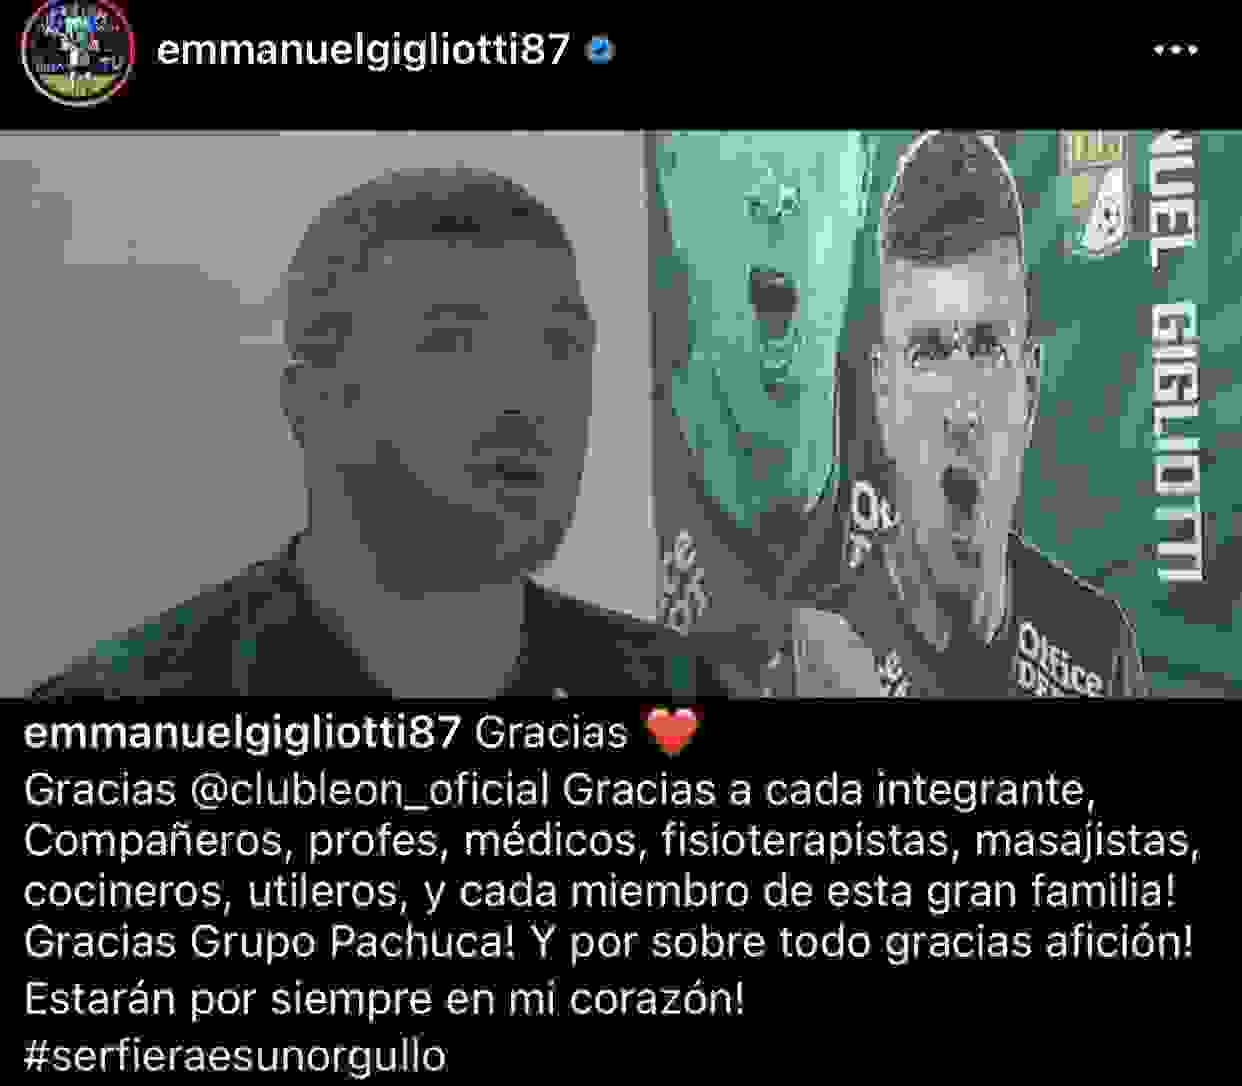 Este es el mensaje que dejó Emmanuel Gigliotti a través de su cuenta de instagram.